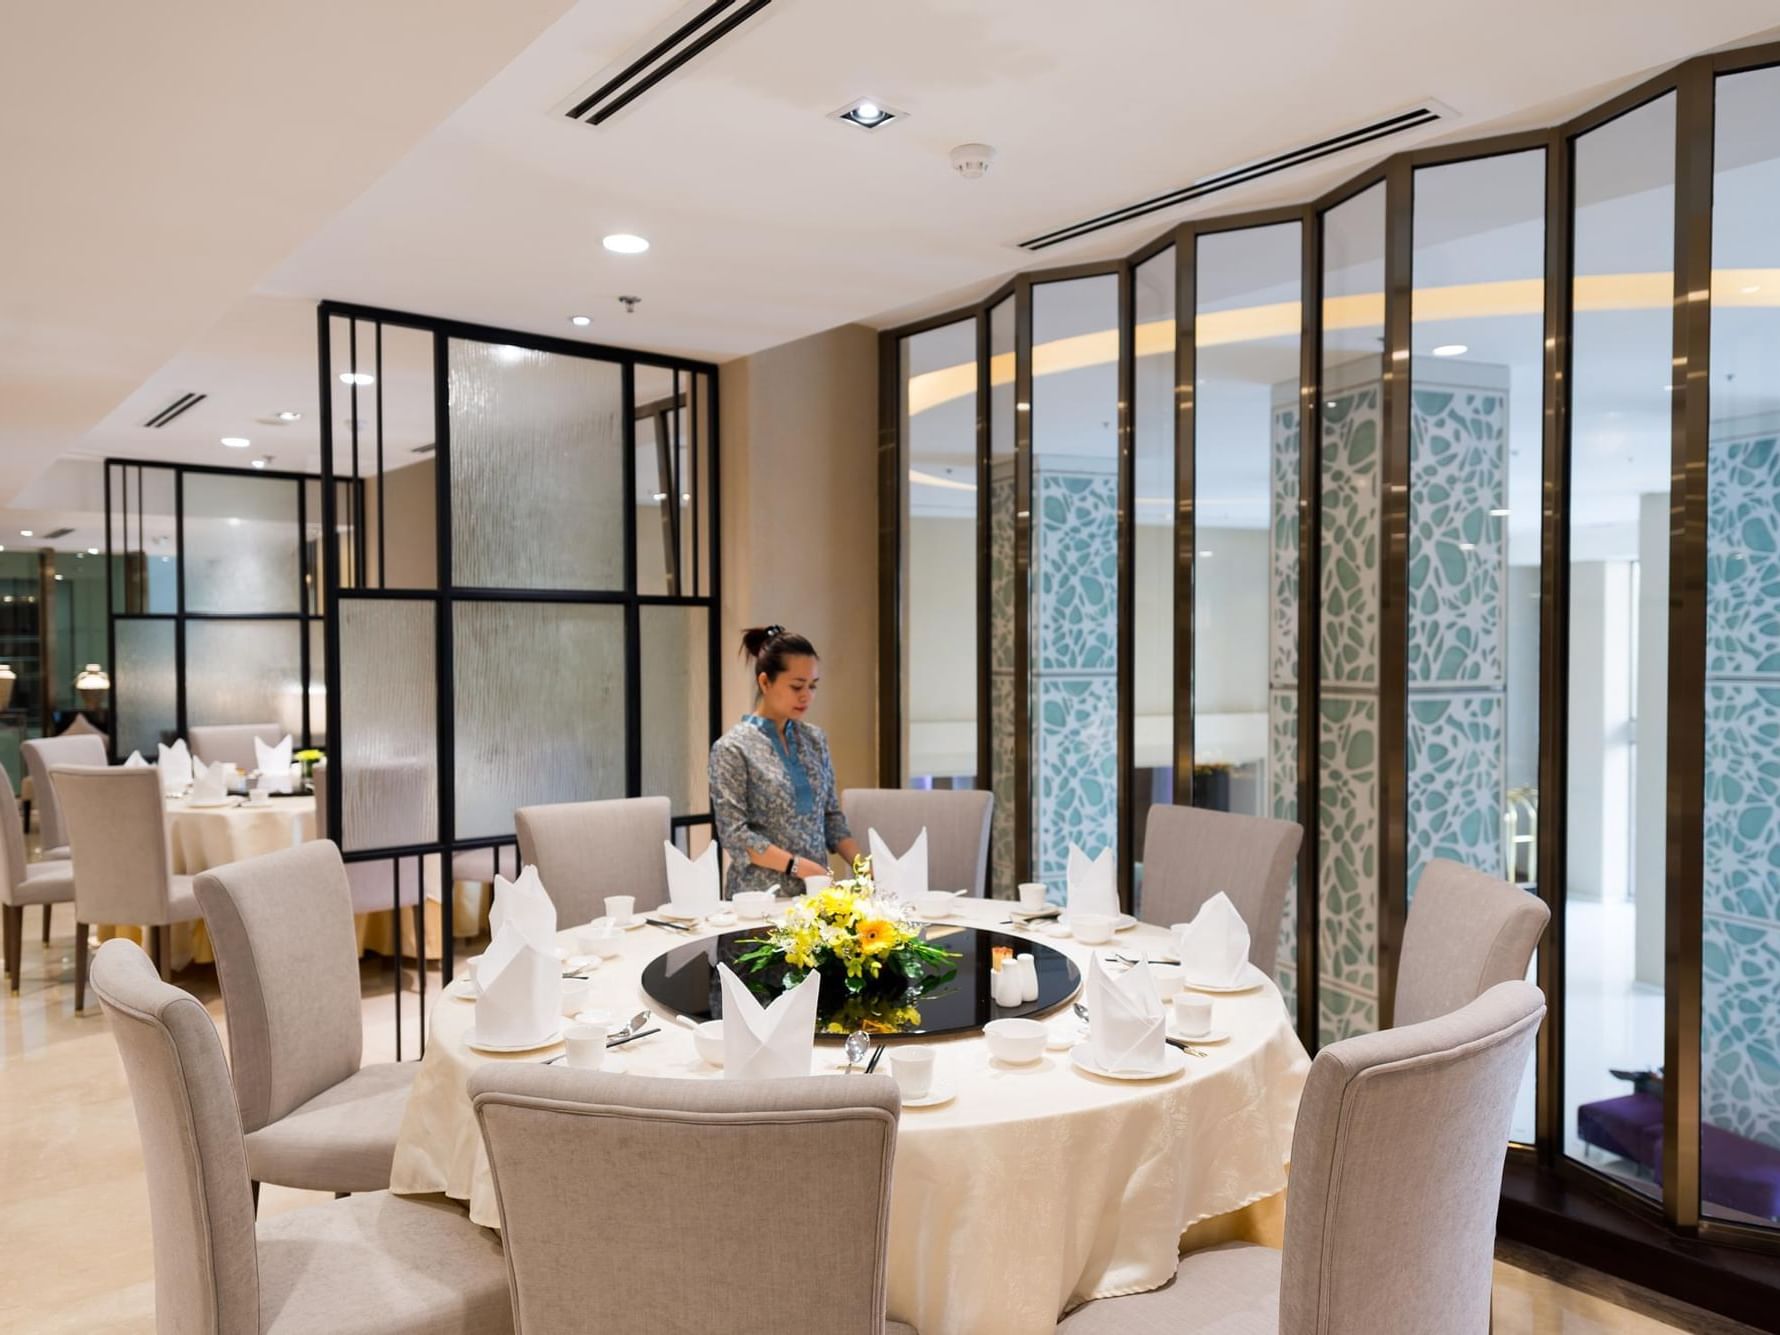 Dining area in Tung Garden at Eastin Grand Hotel Saigon